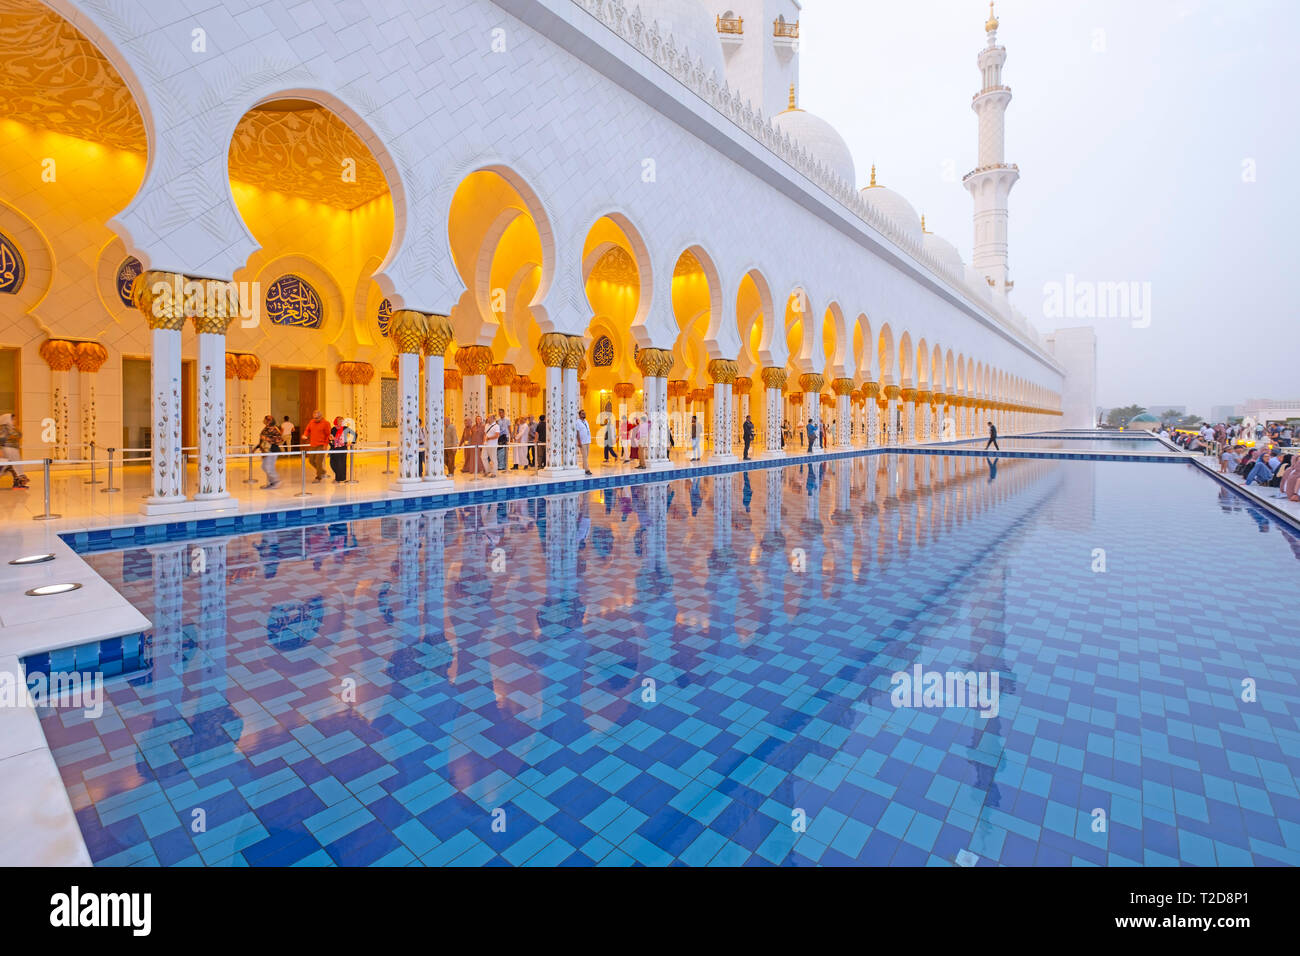 Sheikh Zayed Grande Moschea di Abu Dhabi, Emirati Arabi Uniti Foto Stock